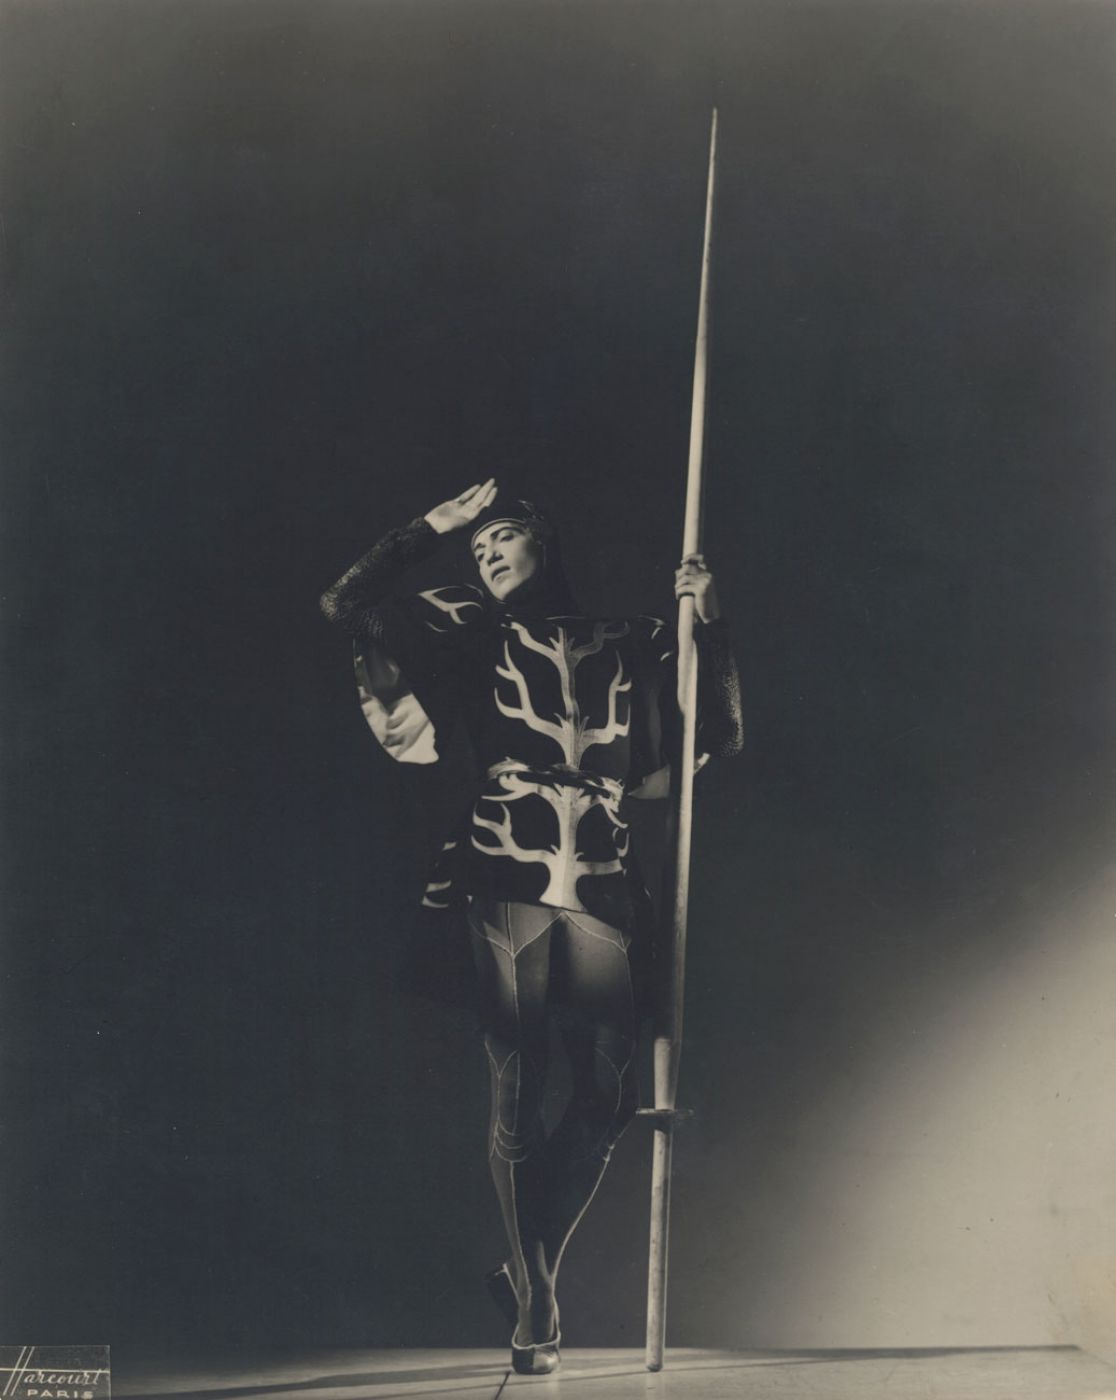 Studio Harcourt, “Serge Lifar dans “Le chevalier et la demoiselle””, 1941